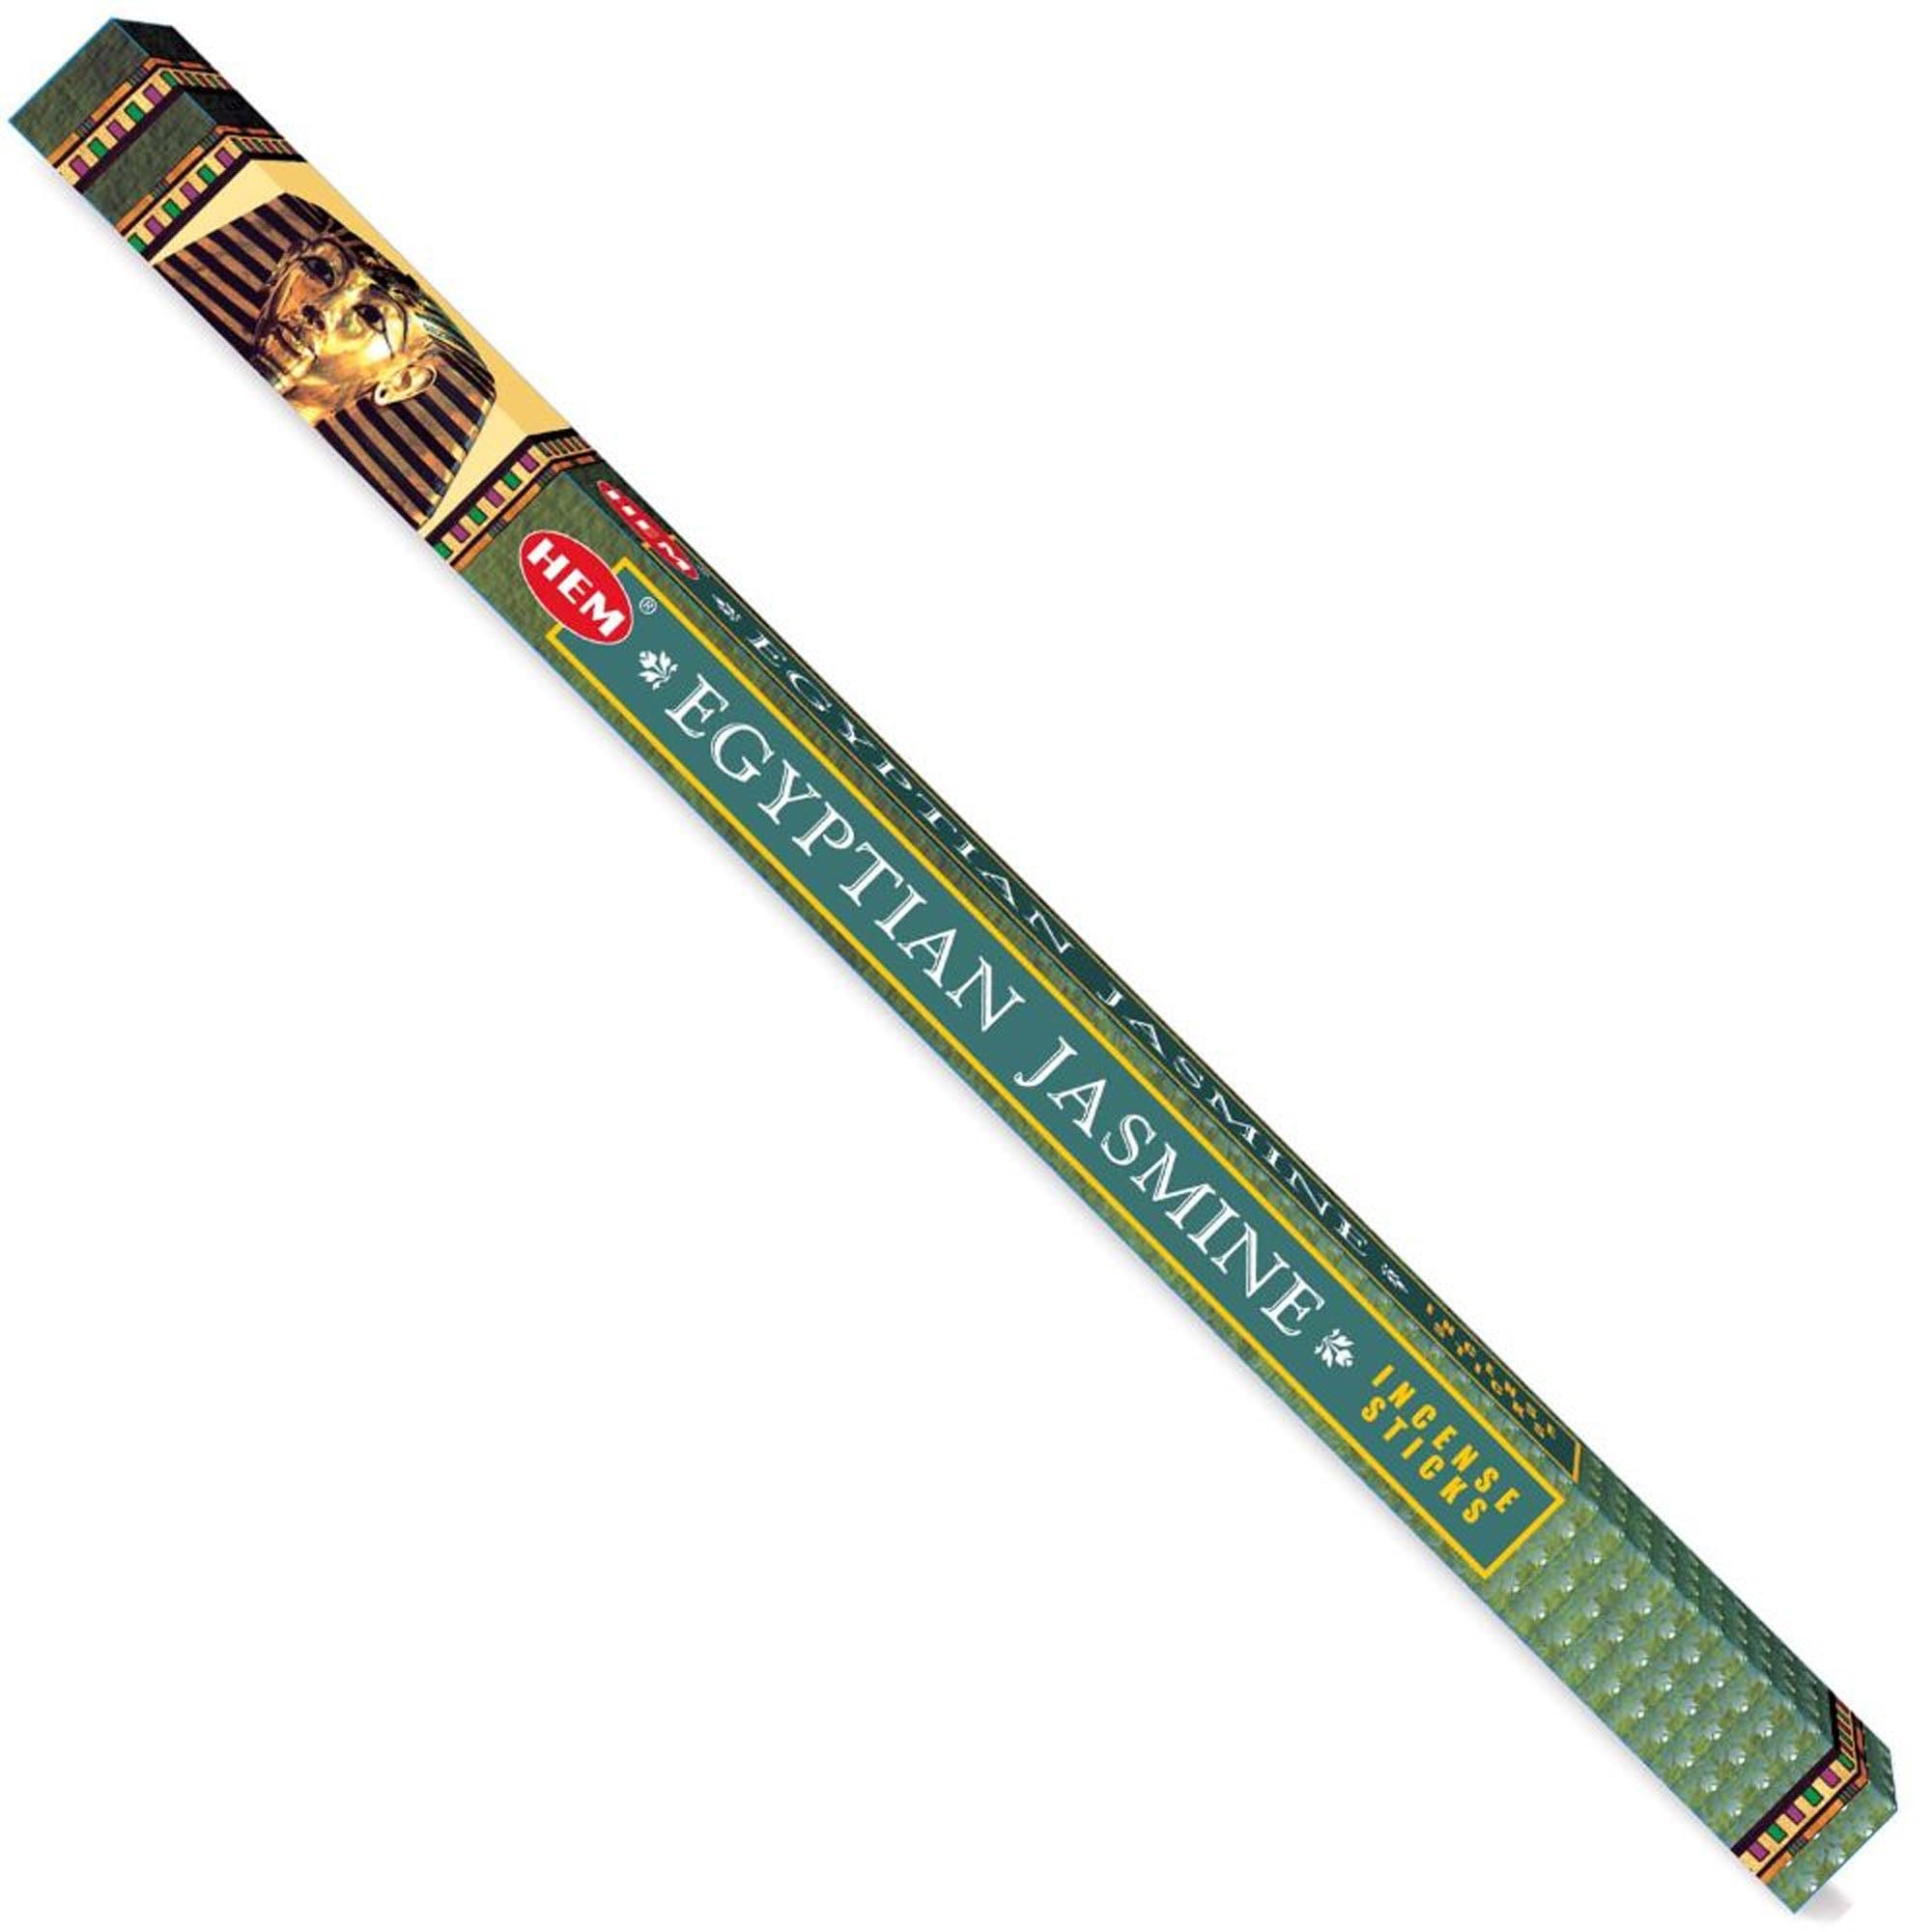 Hem - Square - Egyptian Jasmine Incense Sticks